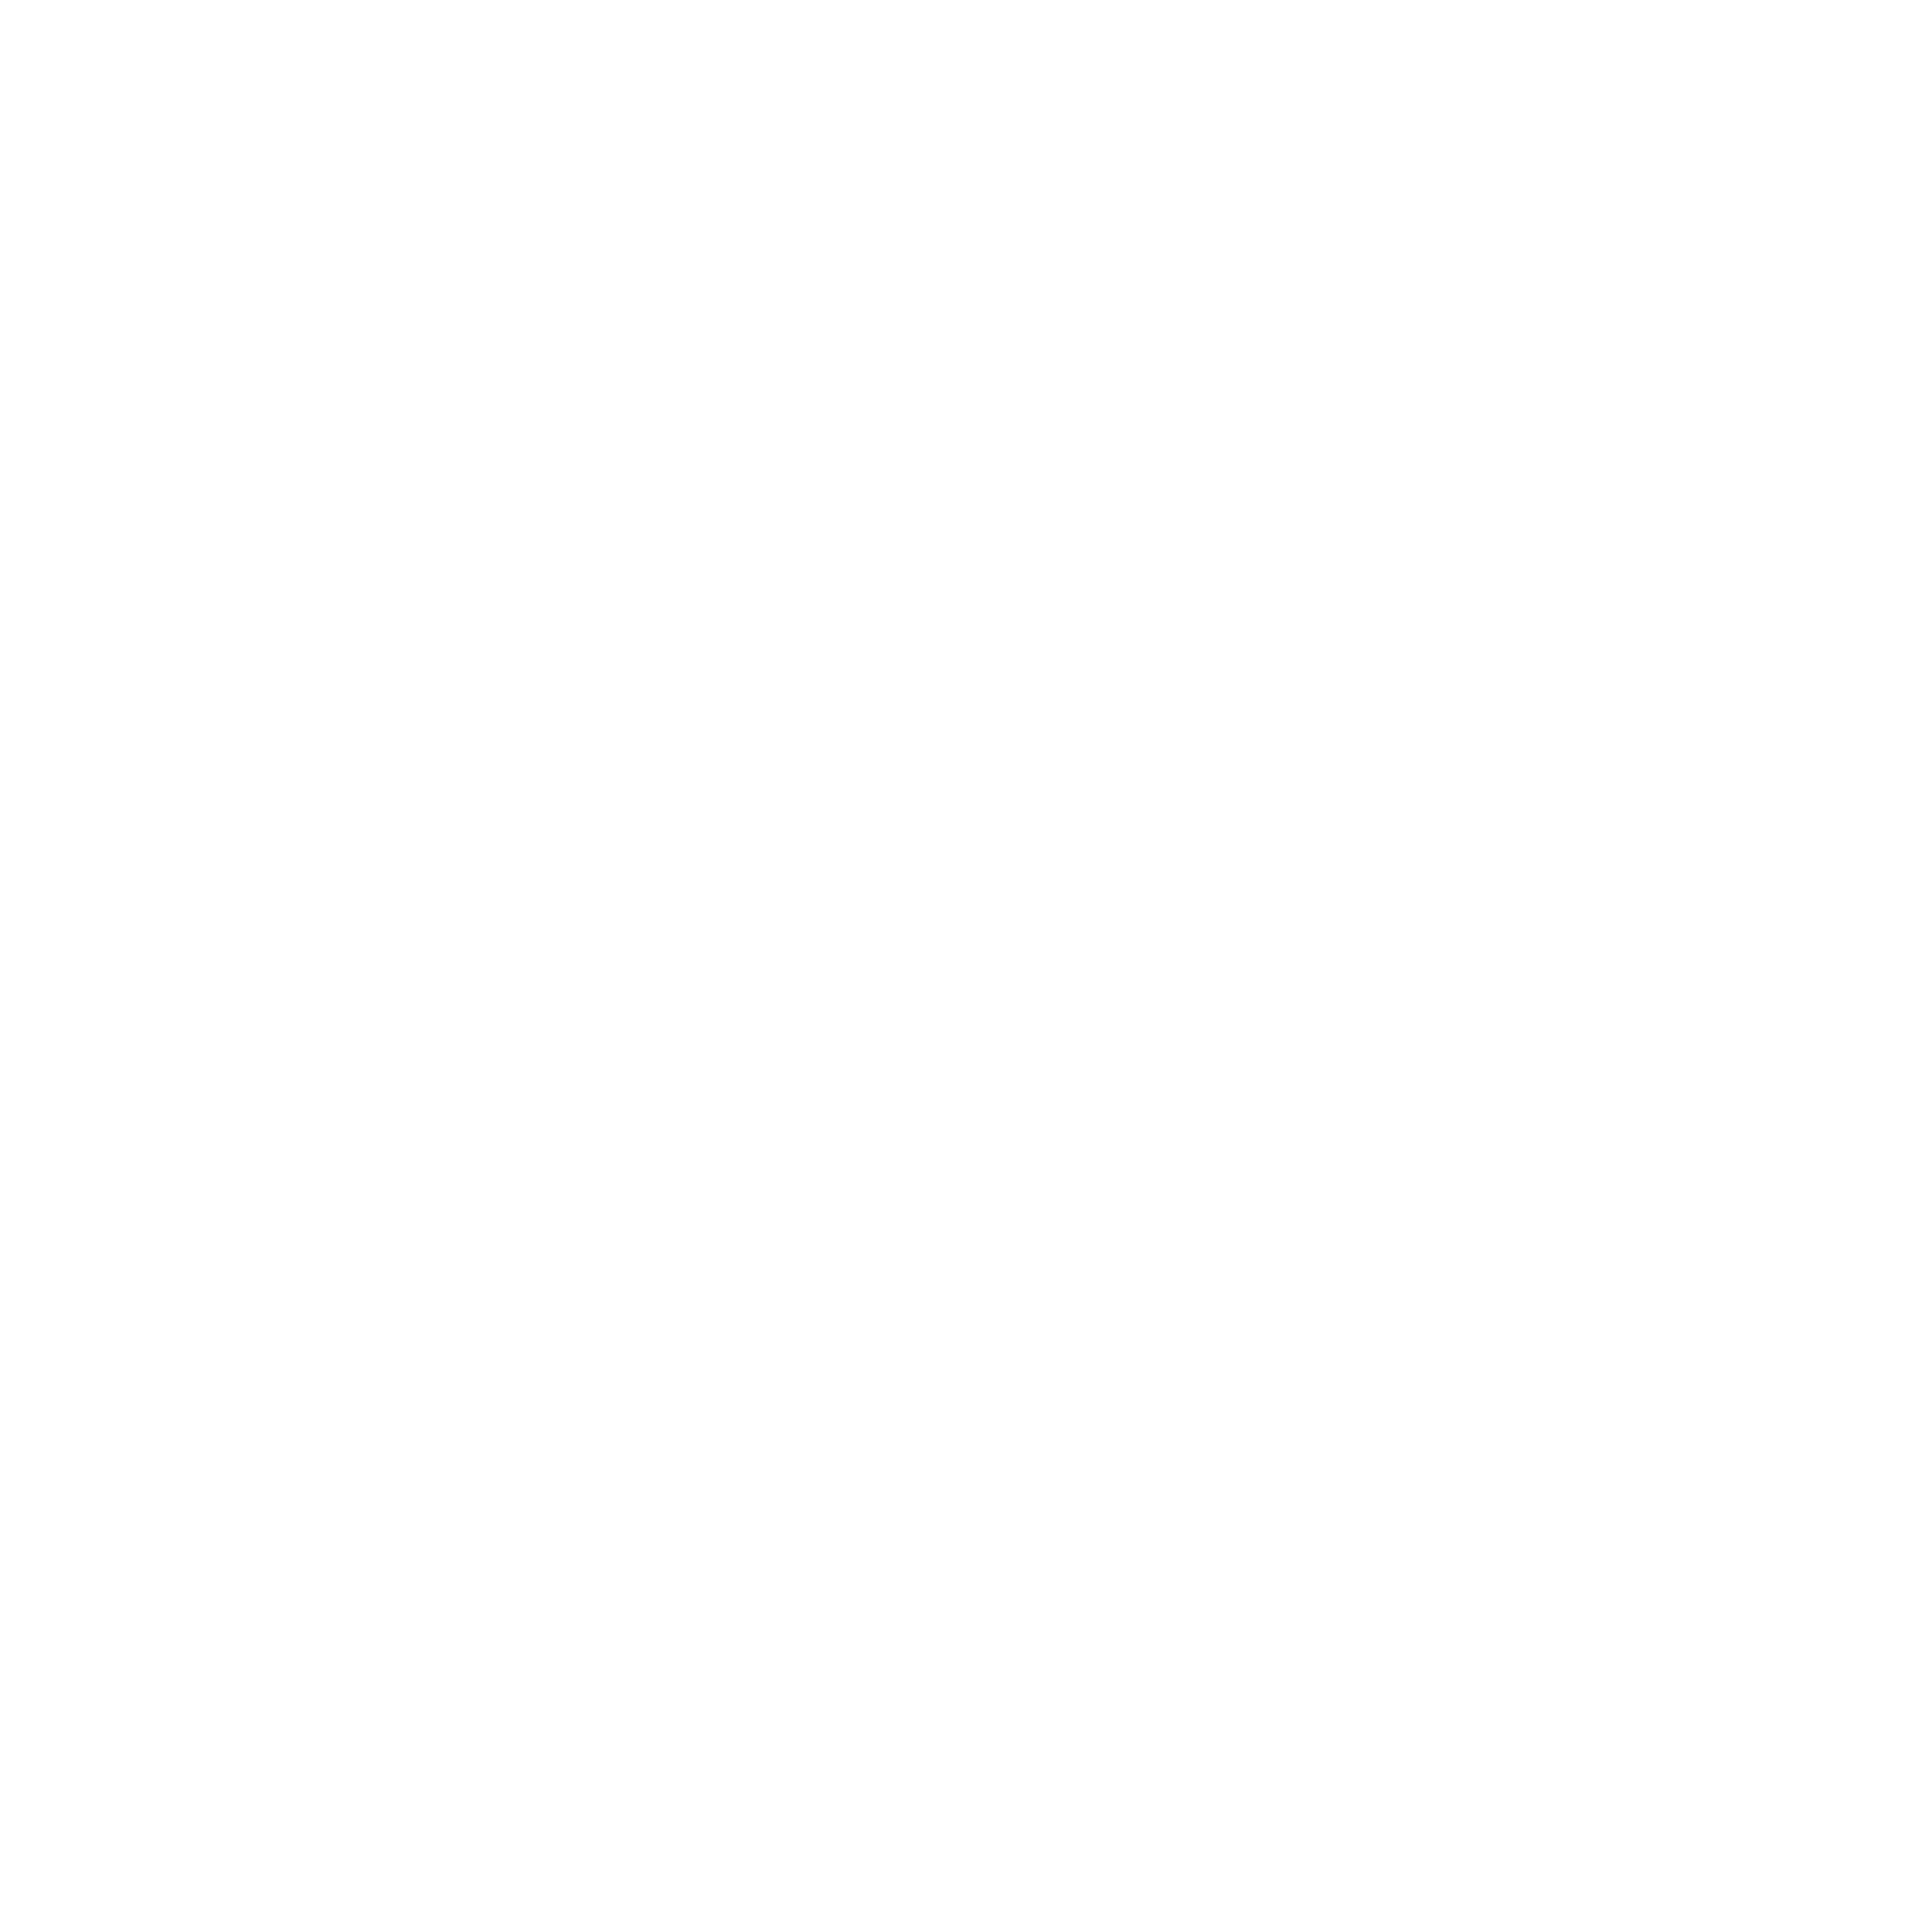 Zeneaze